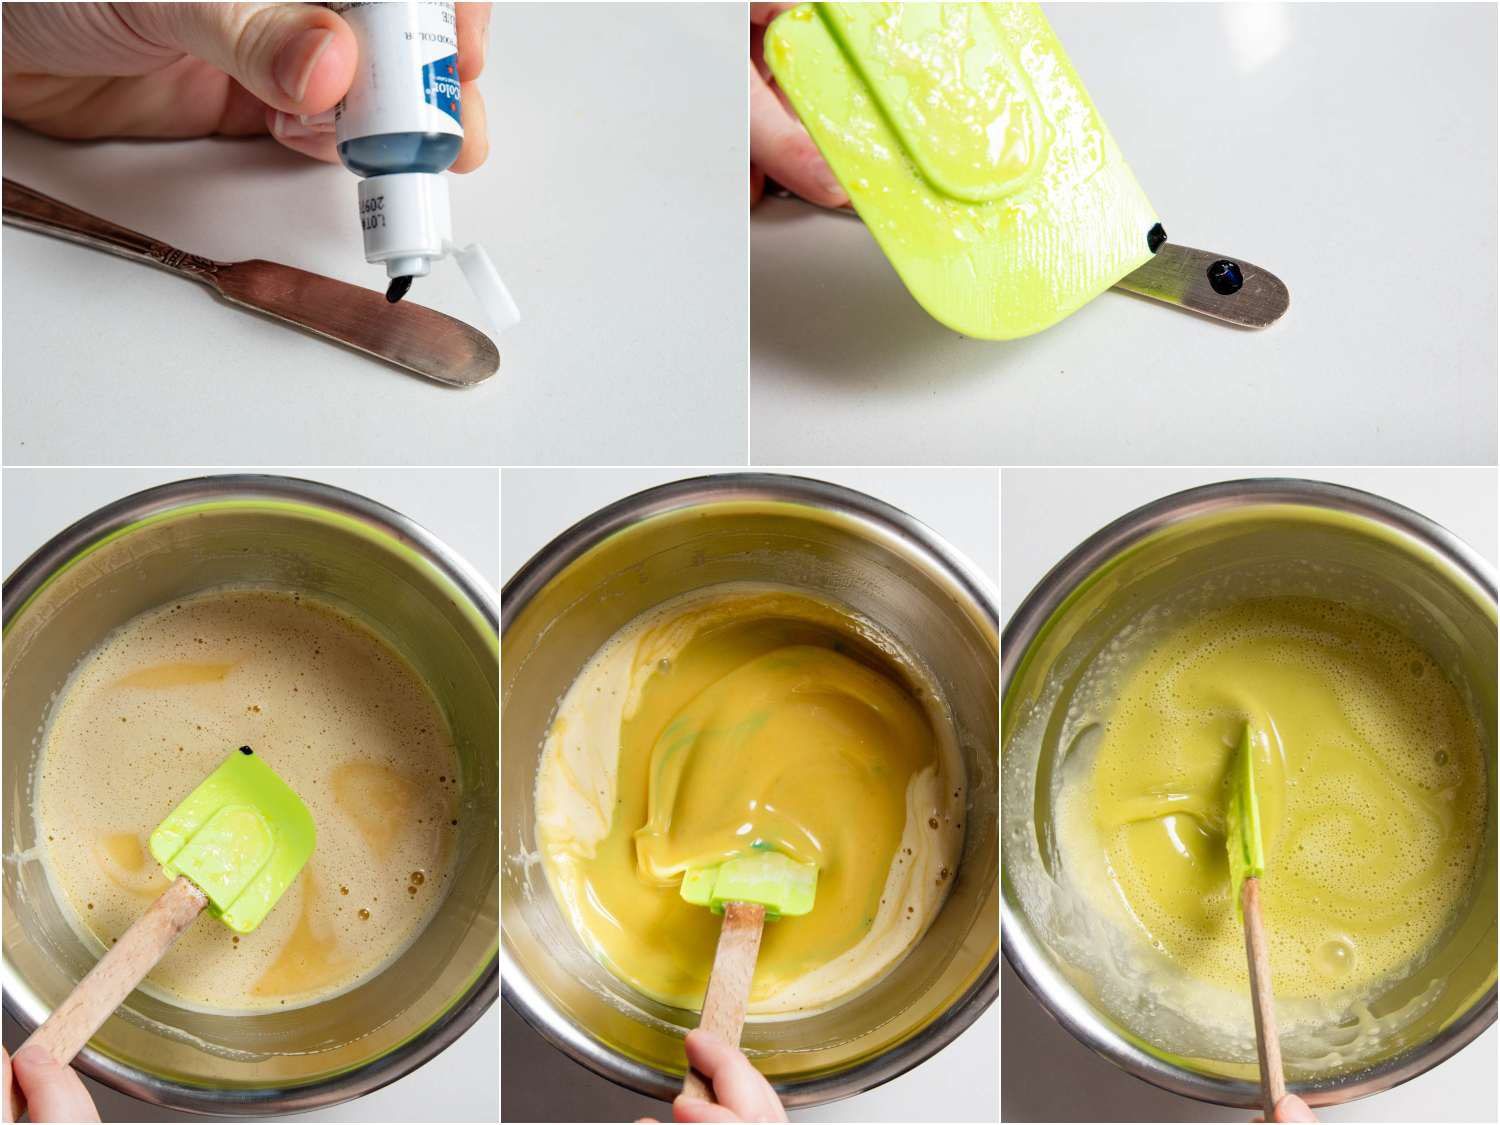 用抹刀在冰淇淋底中加入少量蓝色染料，以中和烤开心果的黄色基调。gydF4y2Ba